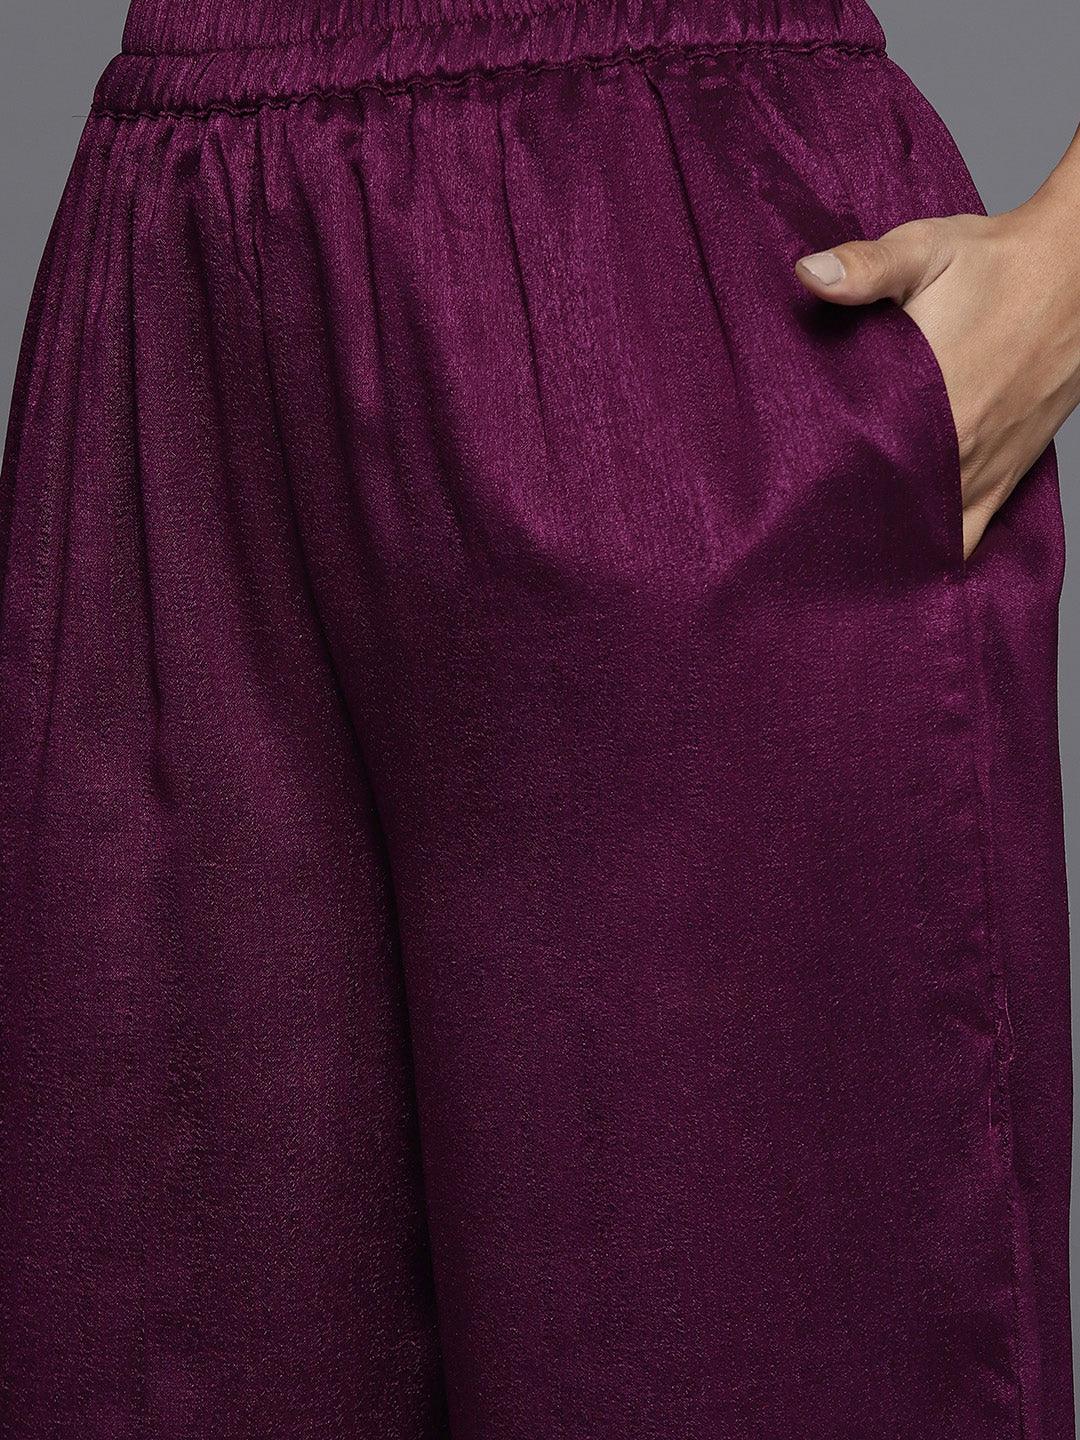 Purple Embroidered Silk Blend Pakistani Suit